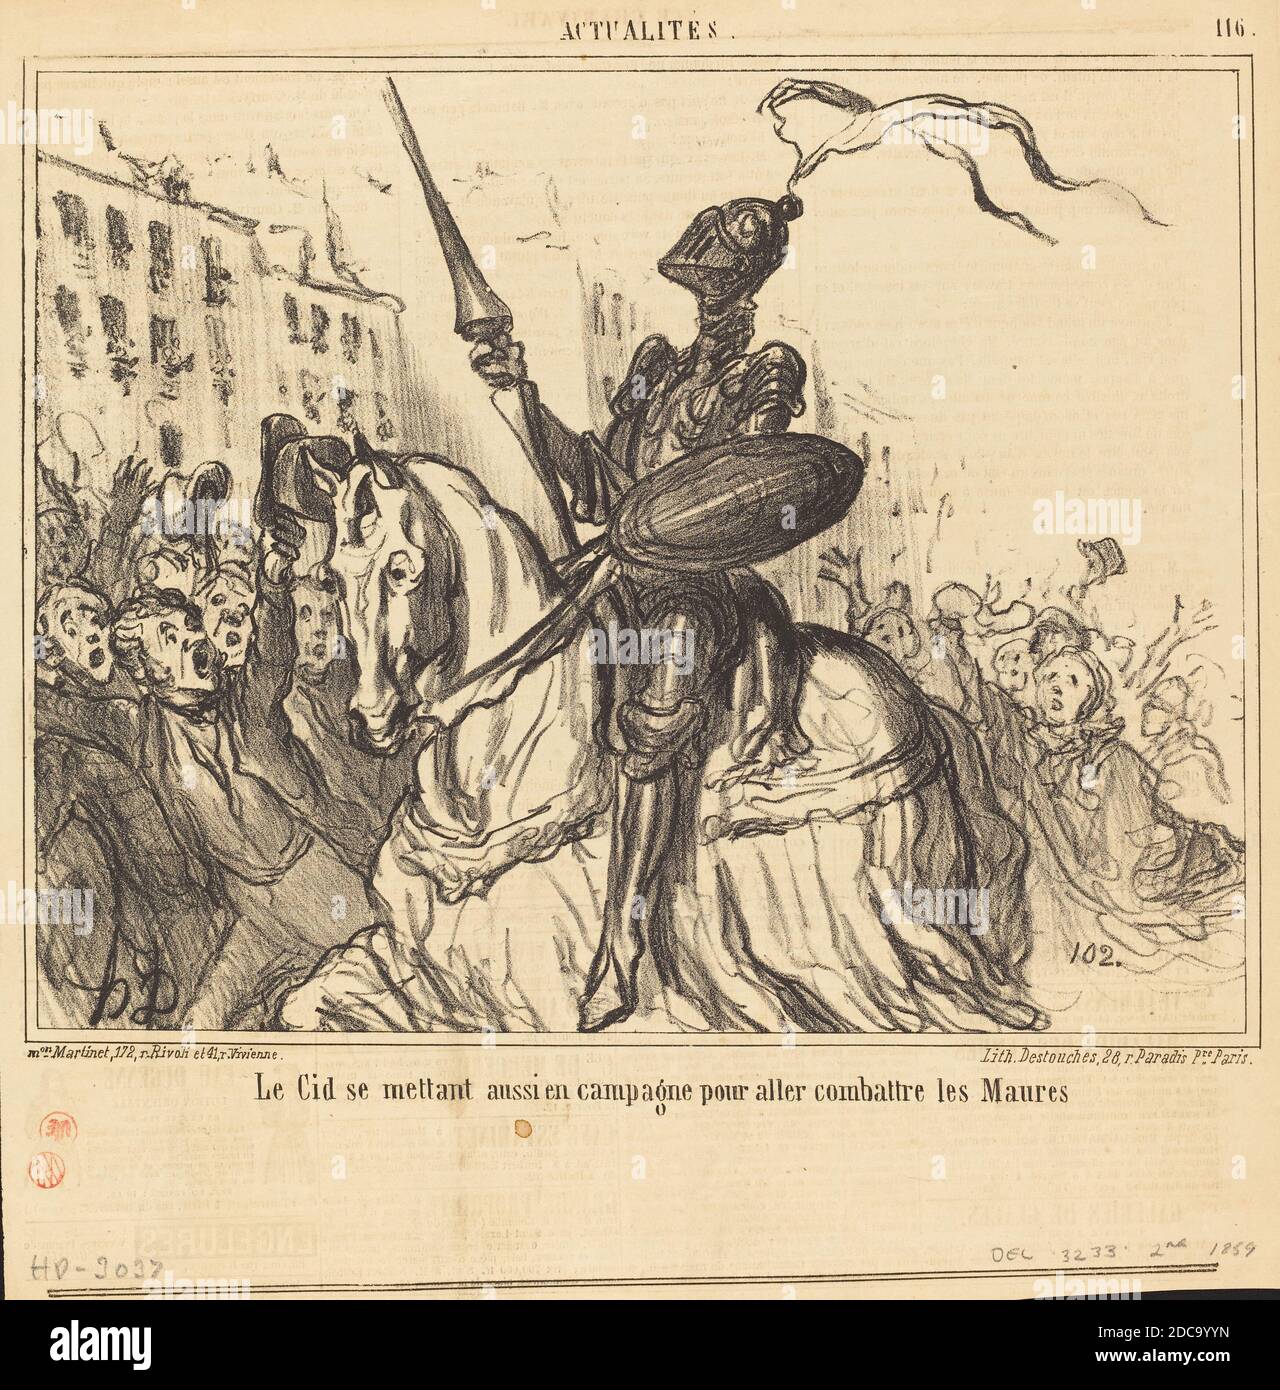 Honoré Daumier, (artista), francés, 1808 - 1879, le Cid se mettant aussi en campagne..., Actualités, (serie), 1859, litografía sobre papel prensa Foto de stock